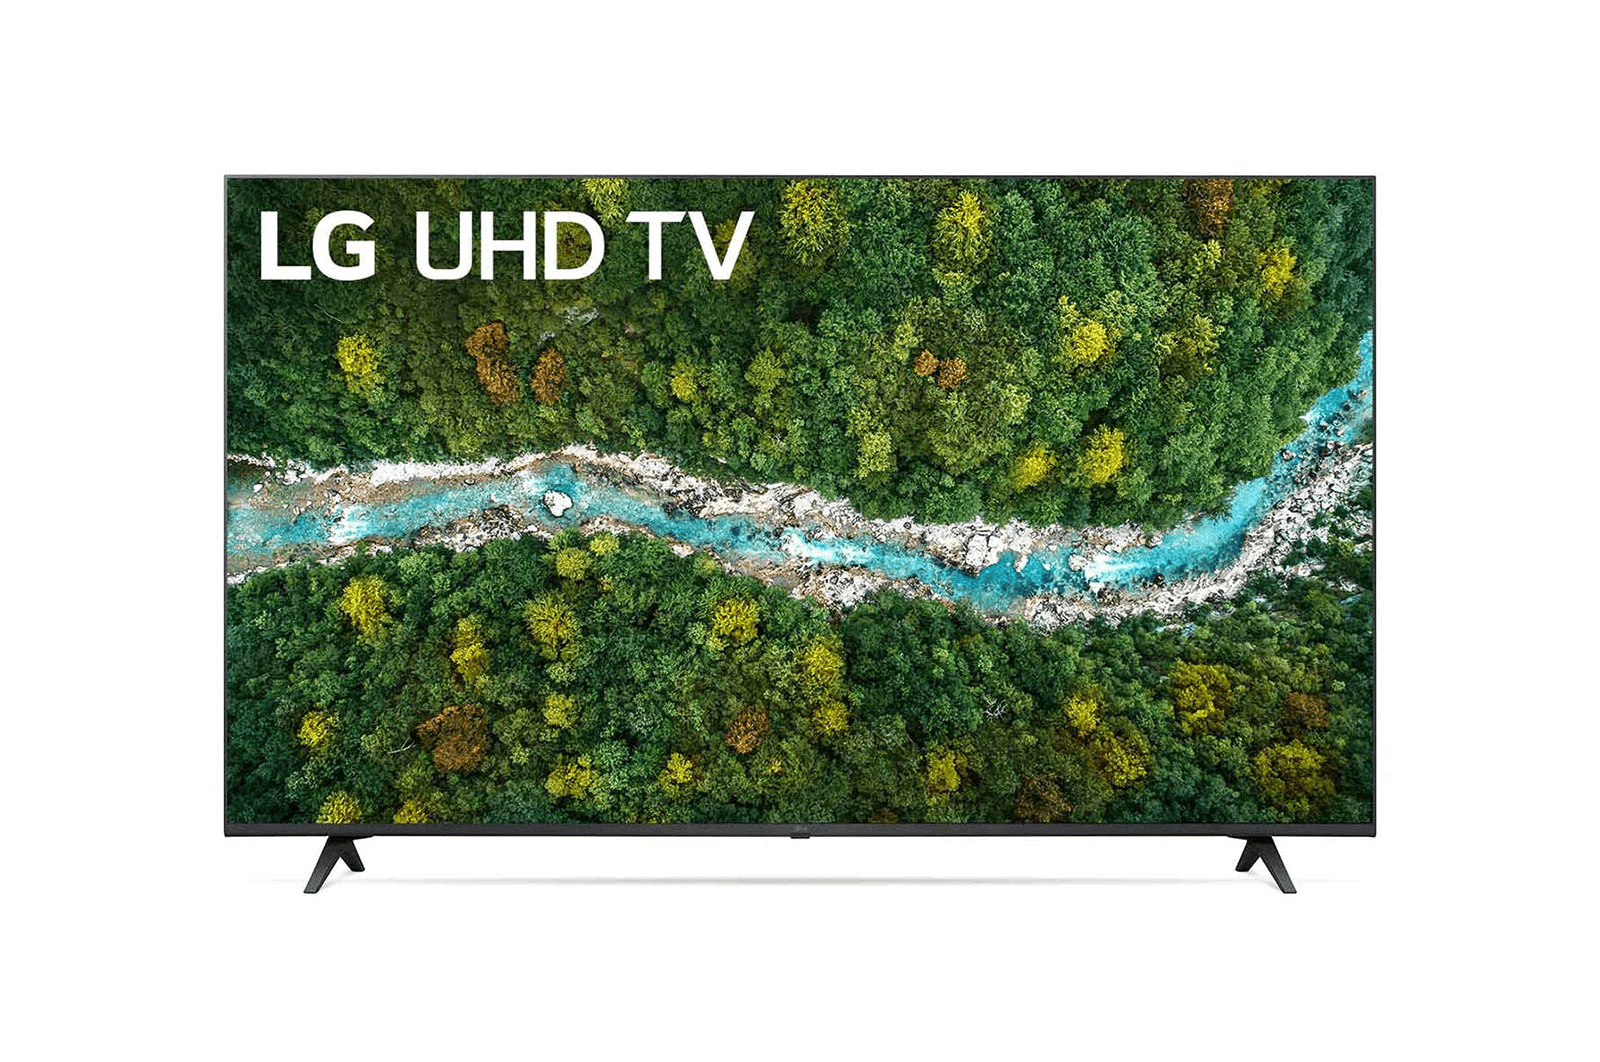 LG-LED TV-60UP7750PTB | 1 - Login Megastore